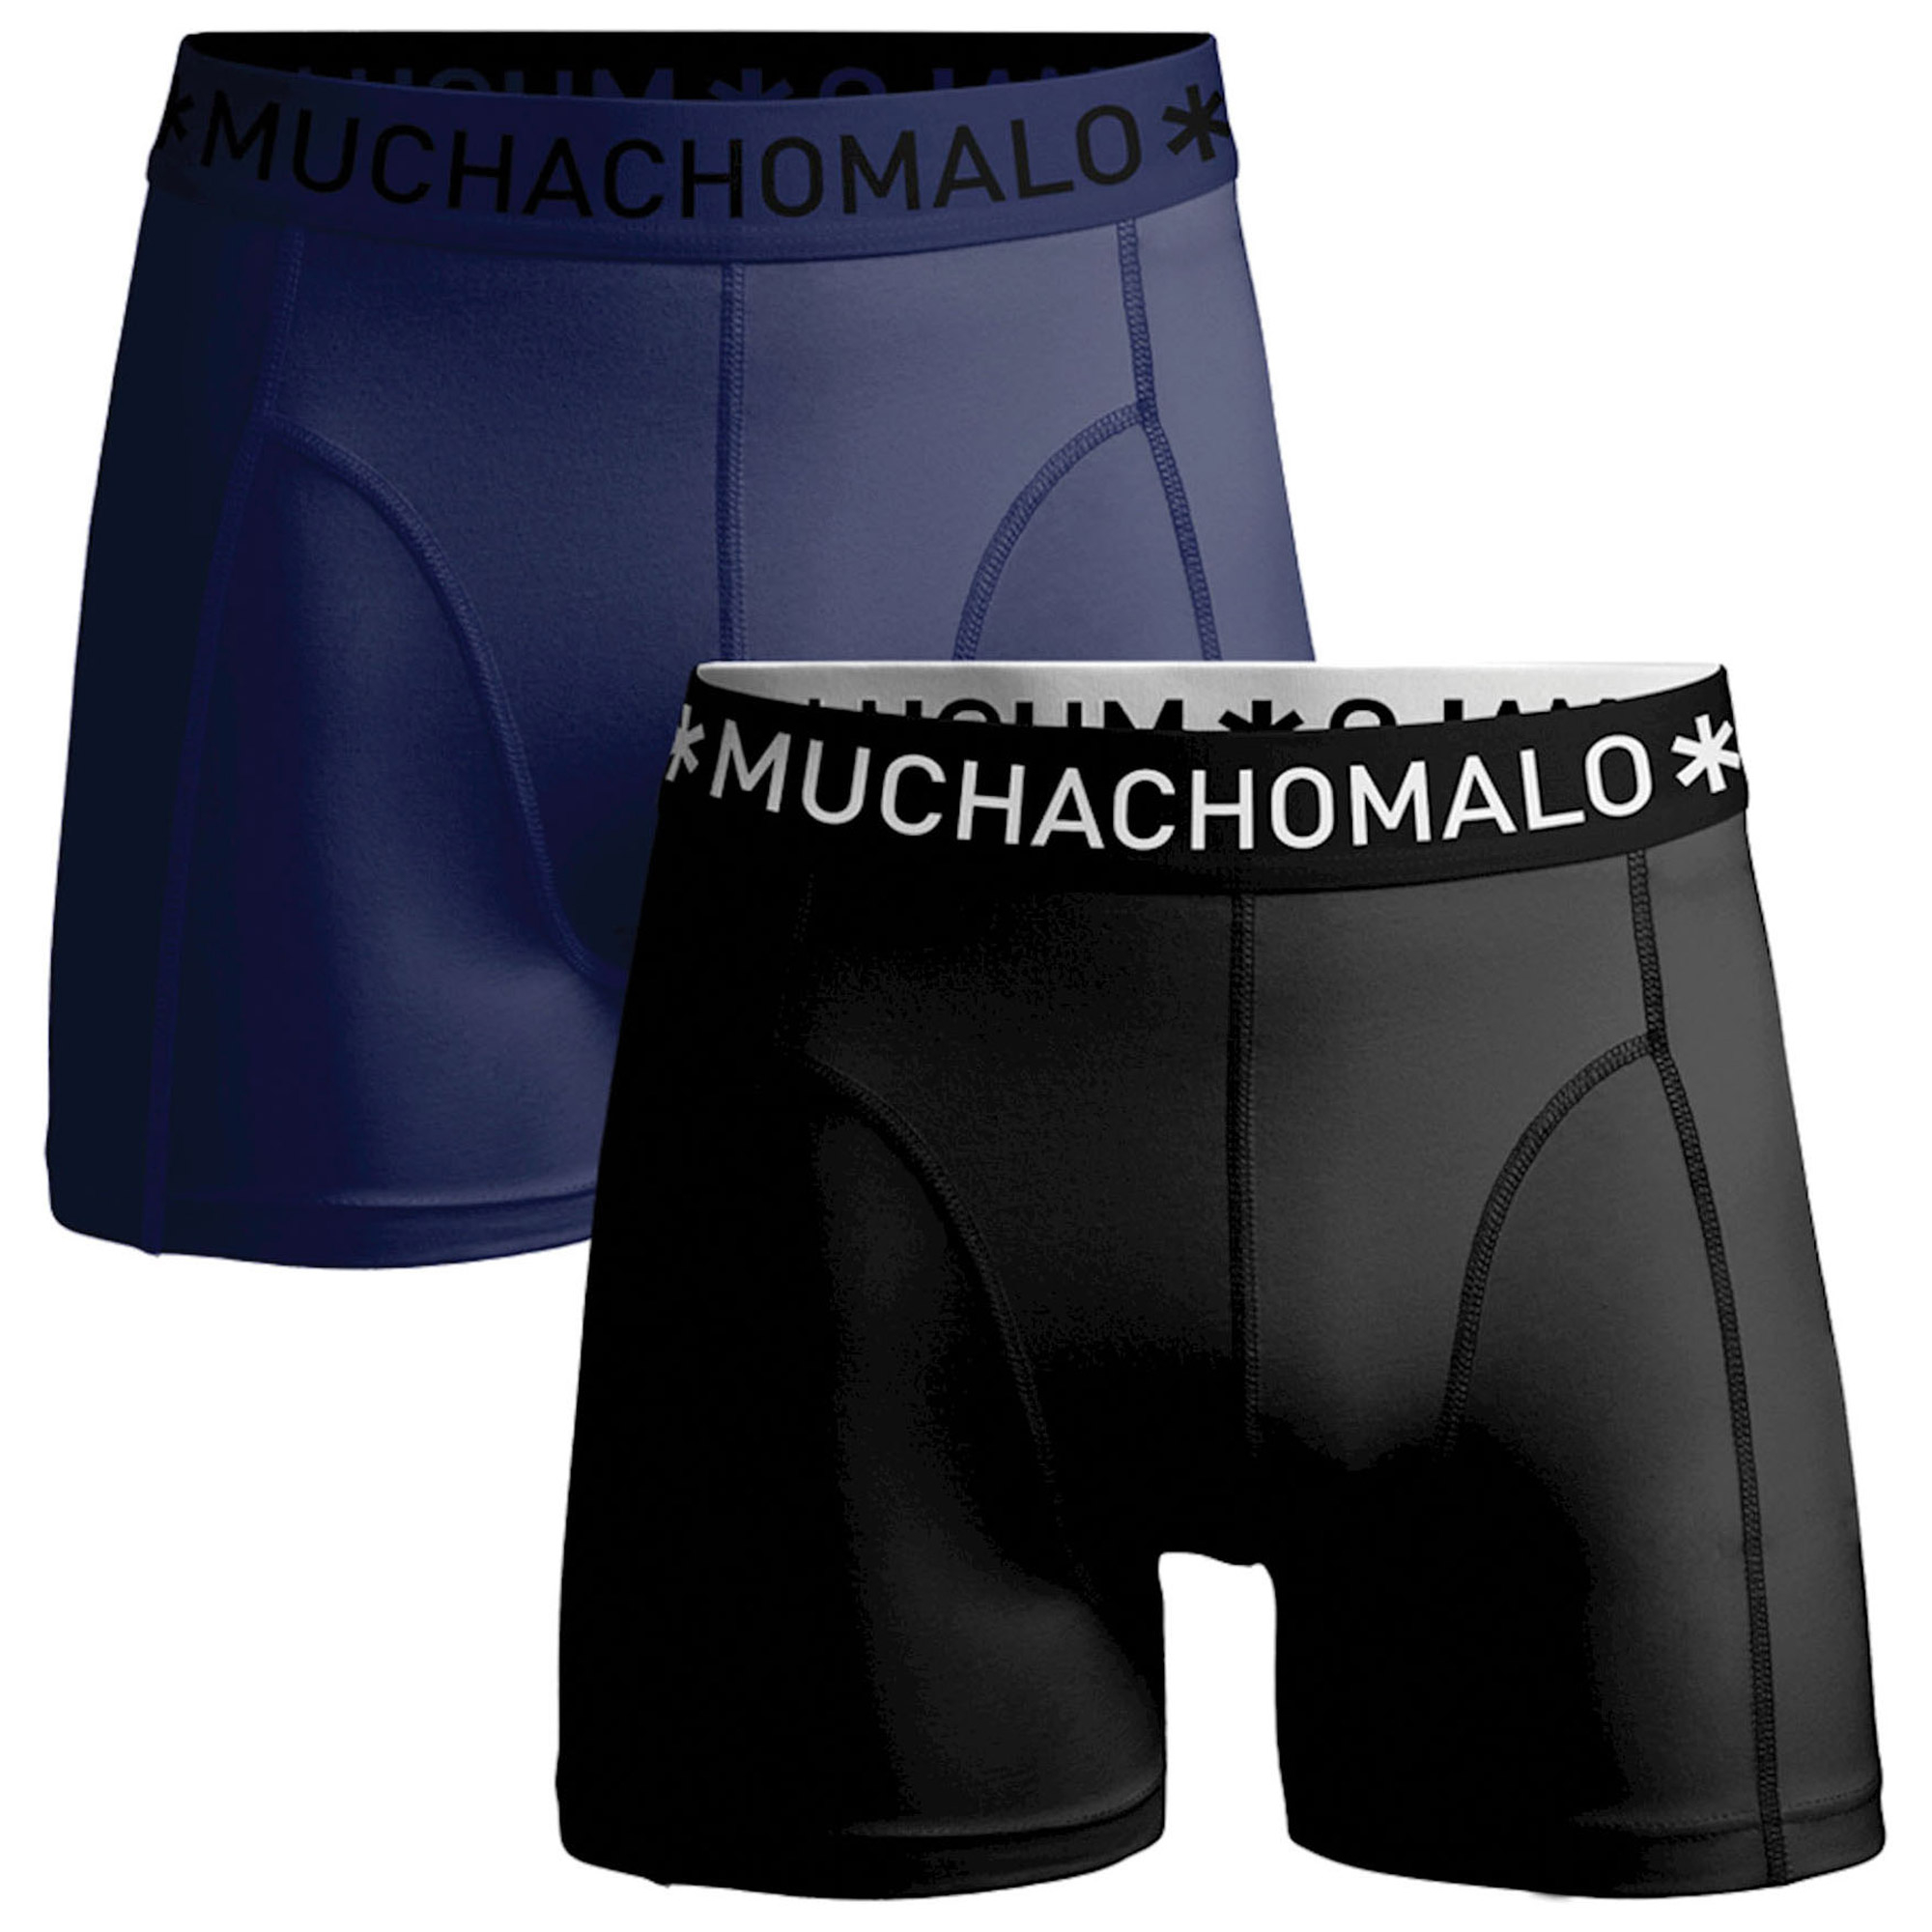 Boxers Muchachomalo Microfiber Homme (lot de 2)